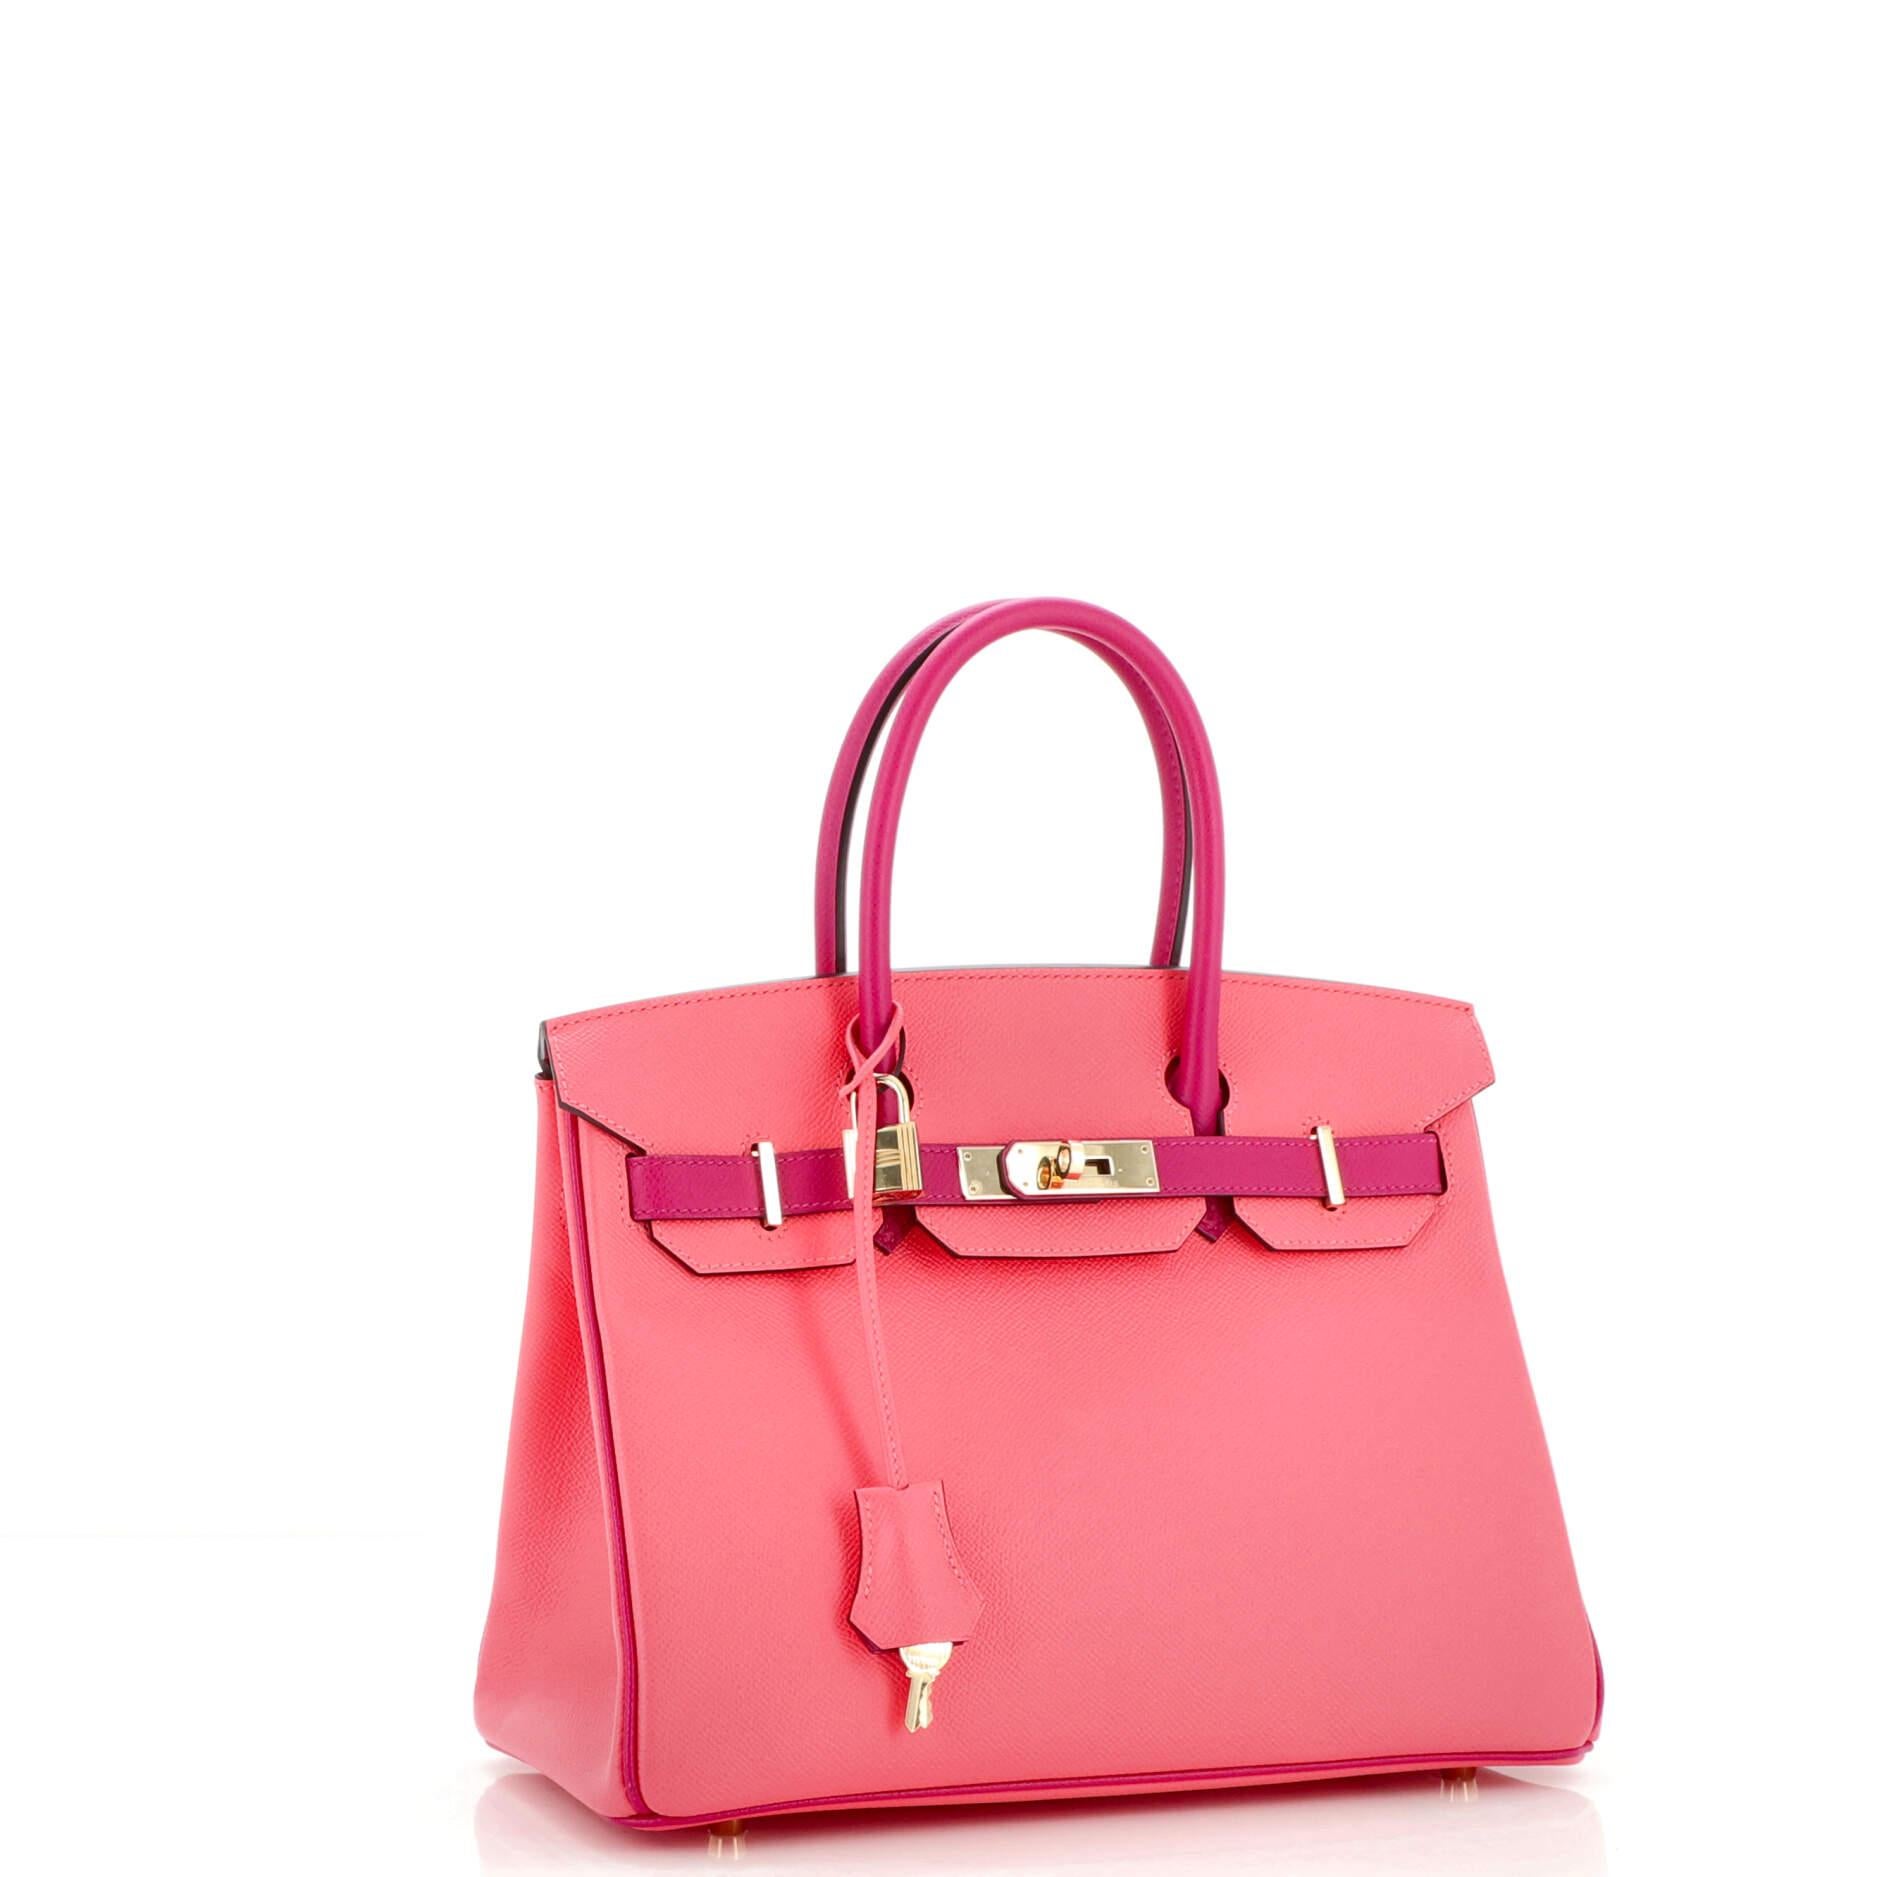 Pink Hermes Birkin Handbag Bicolor Epsom with Gold Hardware 30